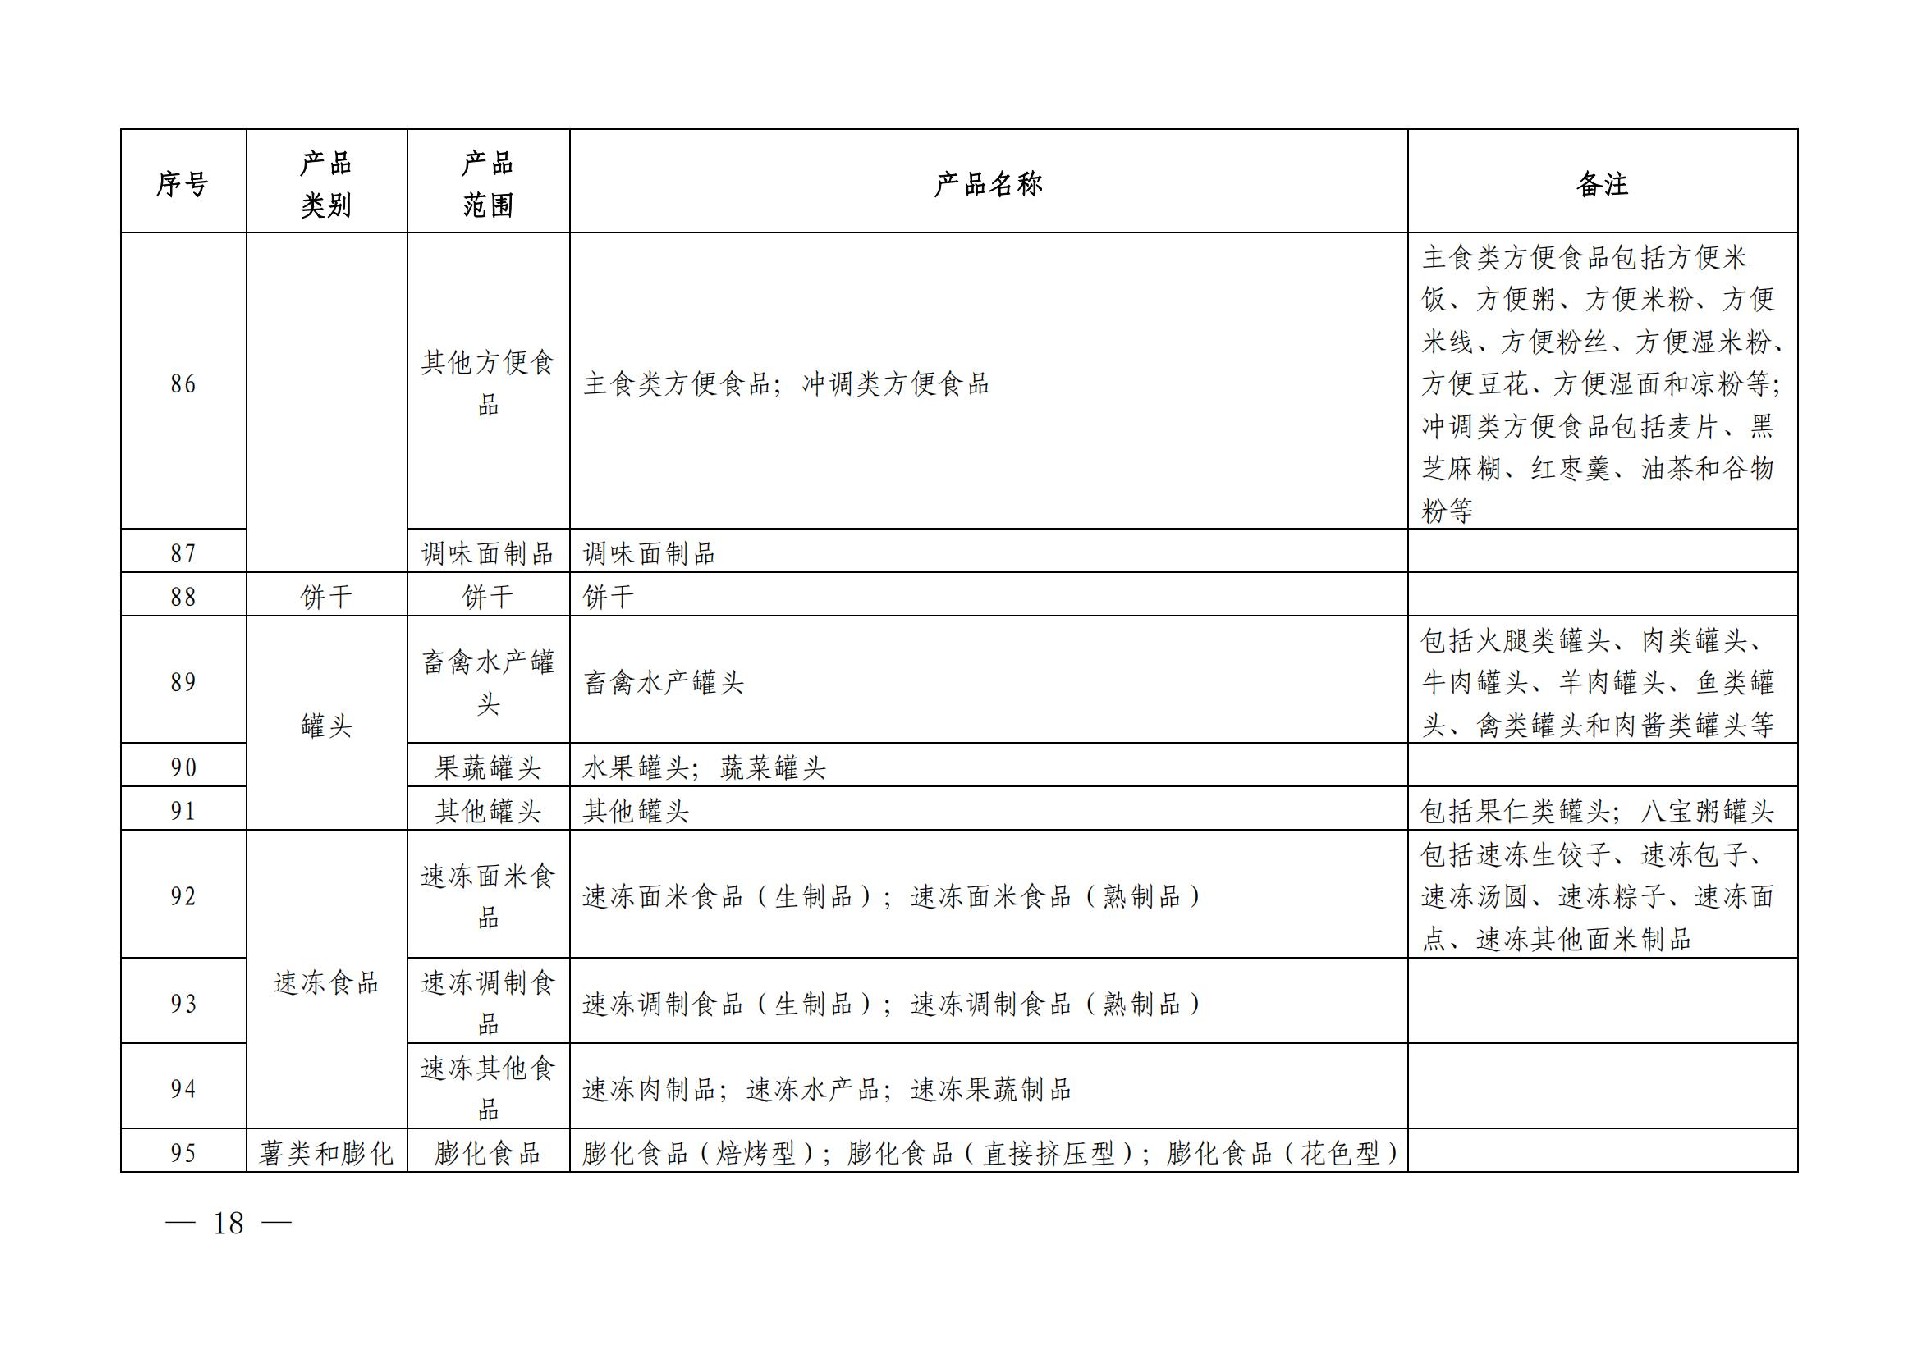 有机产品认证目录【认监委2019年第22号公告】(1)_17.jpg